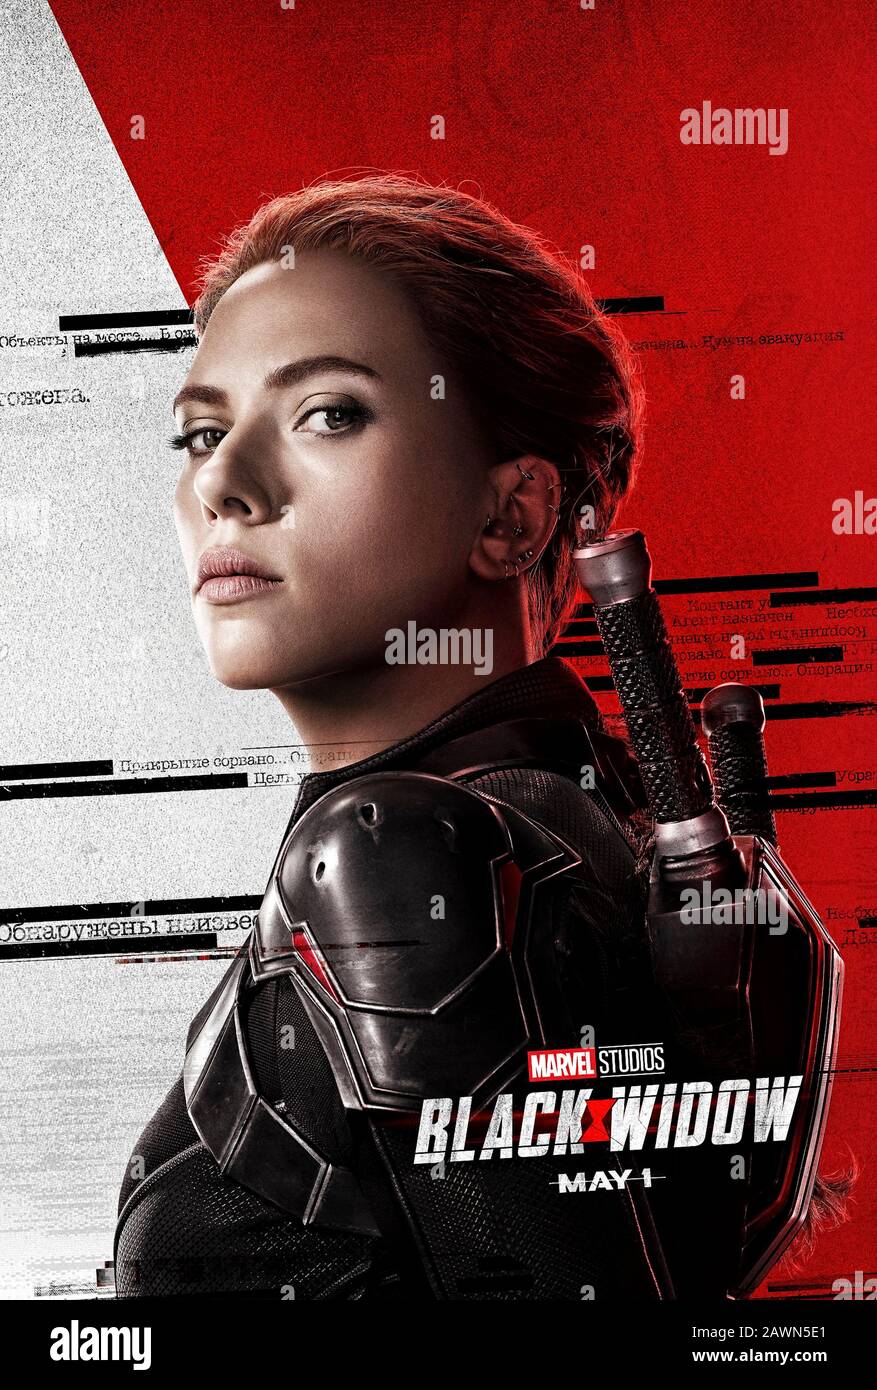 Black Widow (2020) unter der Regie von Cate Shortland und mit Scarlett Johansson in der Hauptrolle als Natasha Romanoff (alias Black Widow), die ihren eigenen Film "Marvel Cinematic Universe" zwischen Kapitän America: Civil war and Avengers: Infinity war erhält. Stockfoto